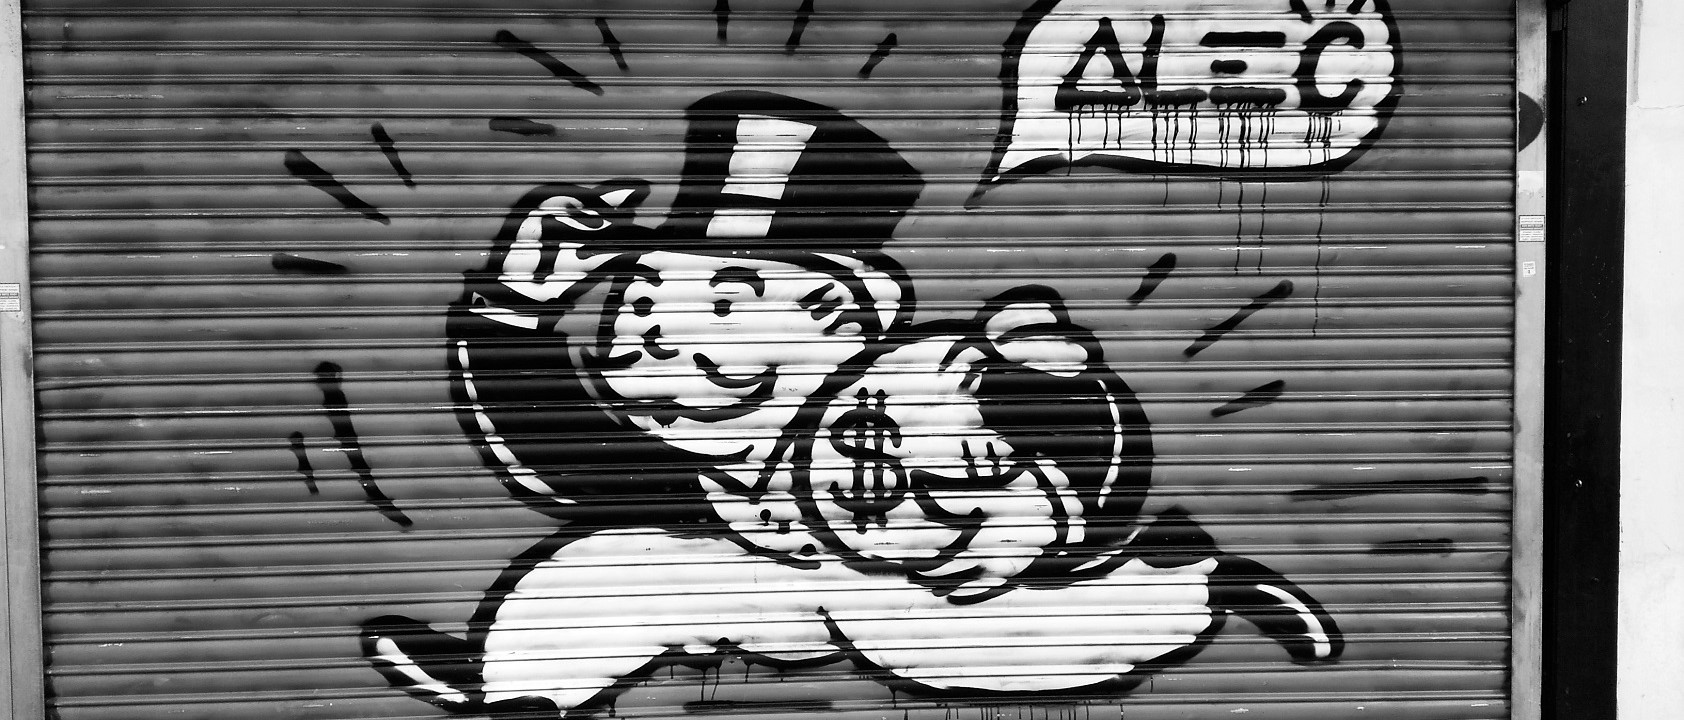 Monopoly Alec Mr. Money Bags Monopoly Landscape